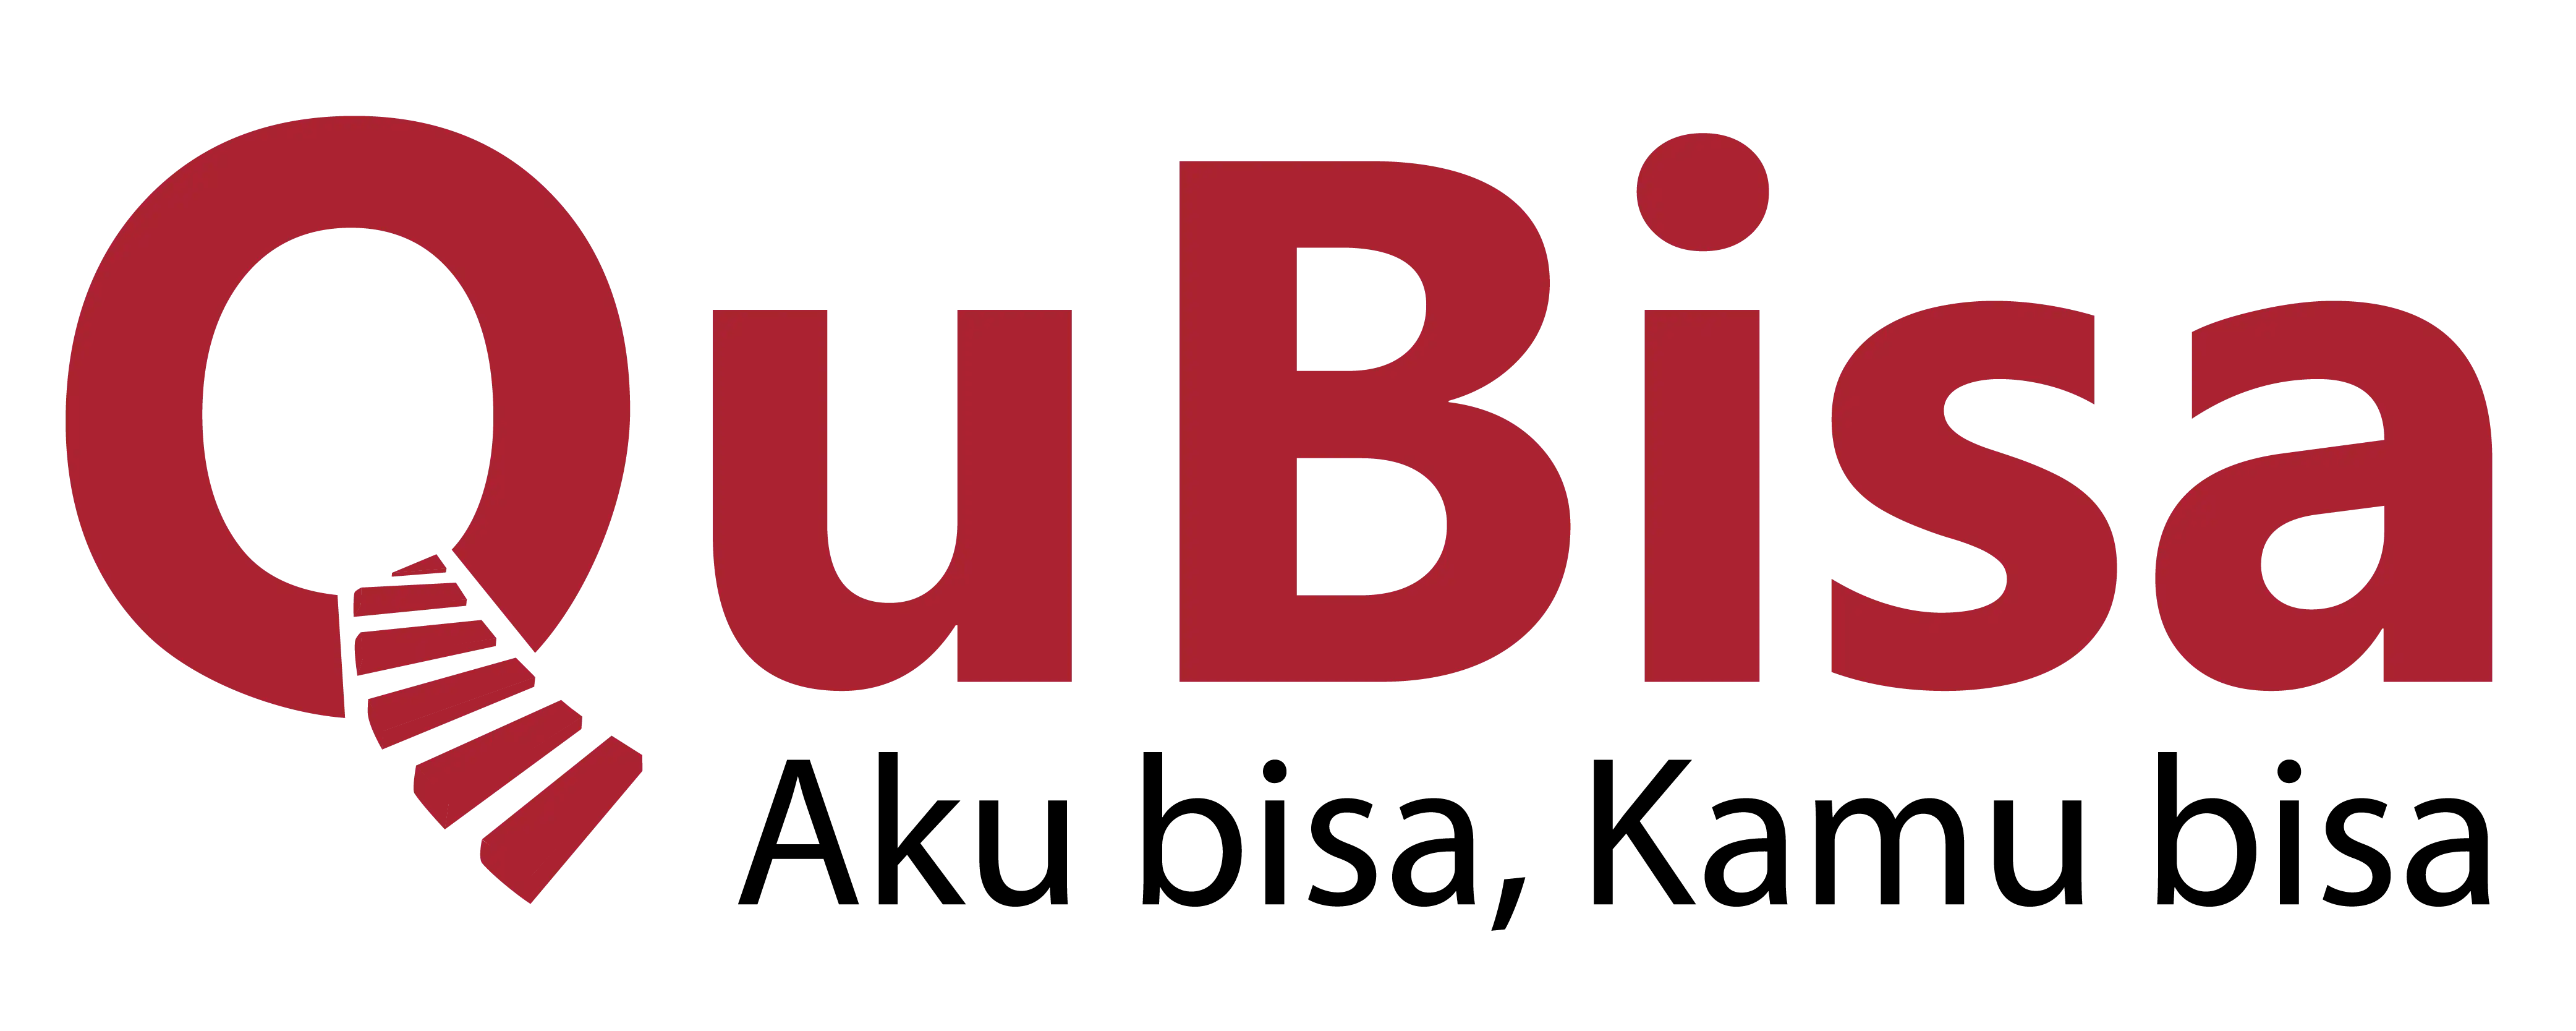 Qubisa Logo